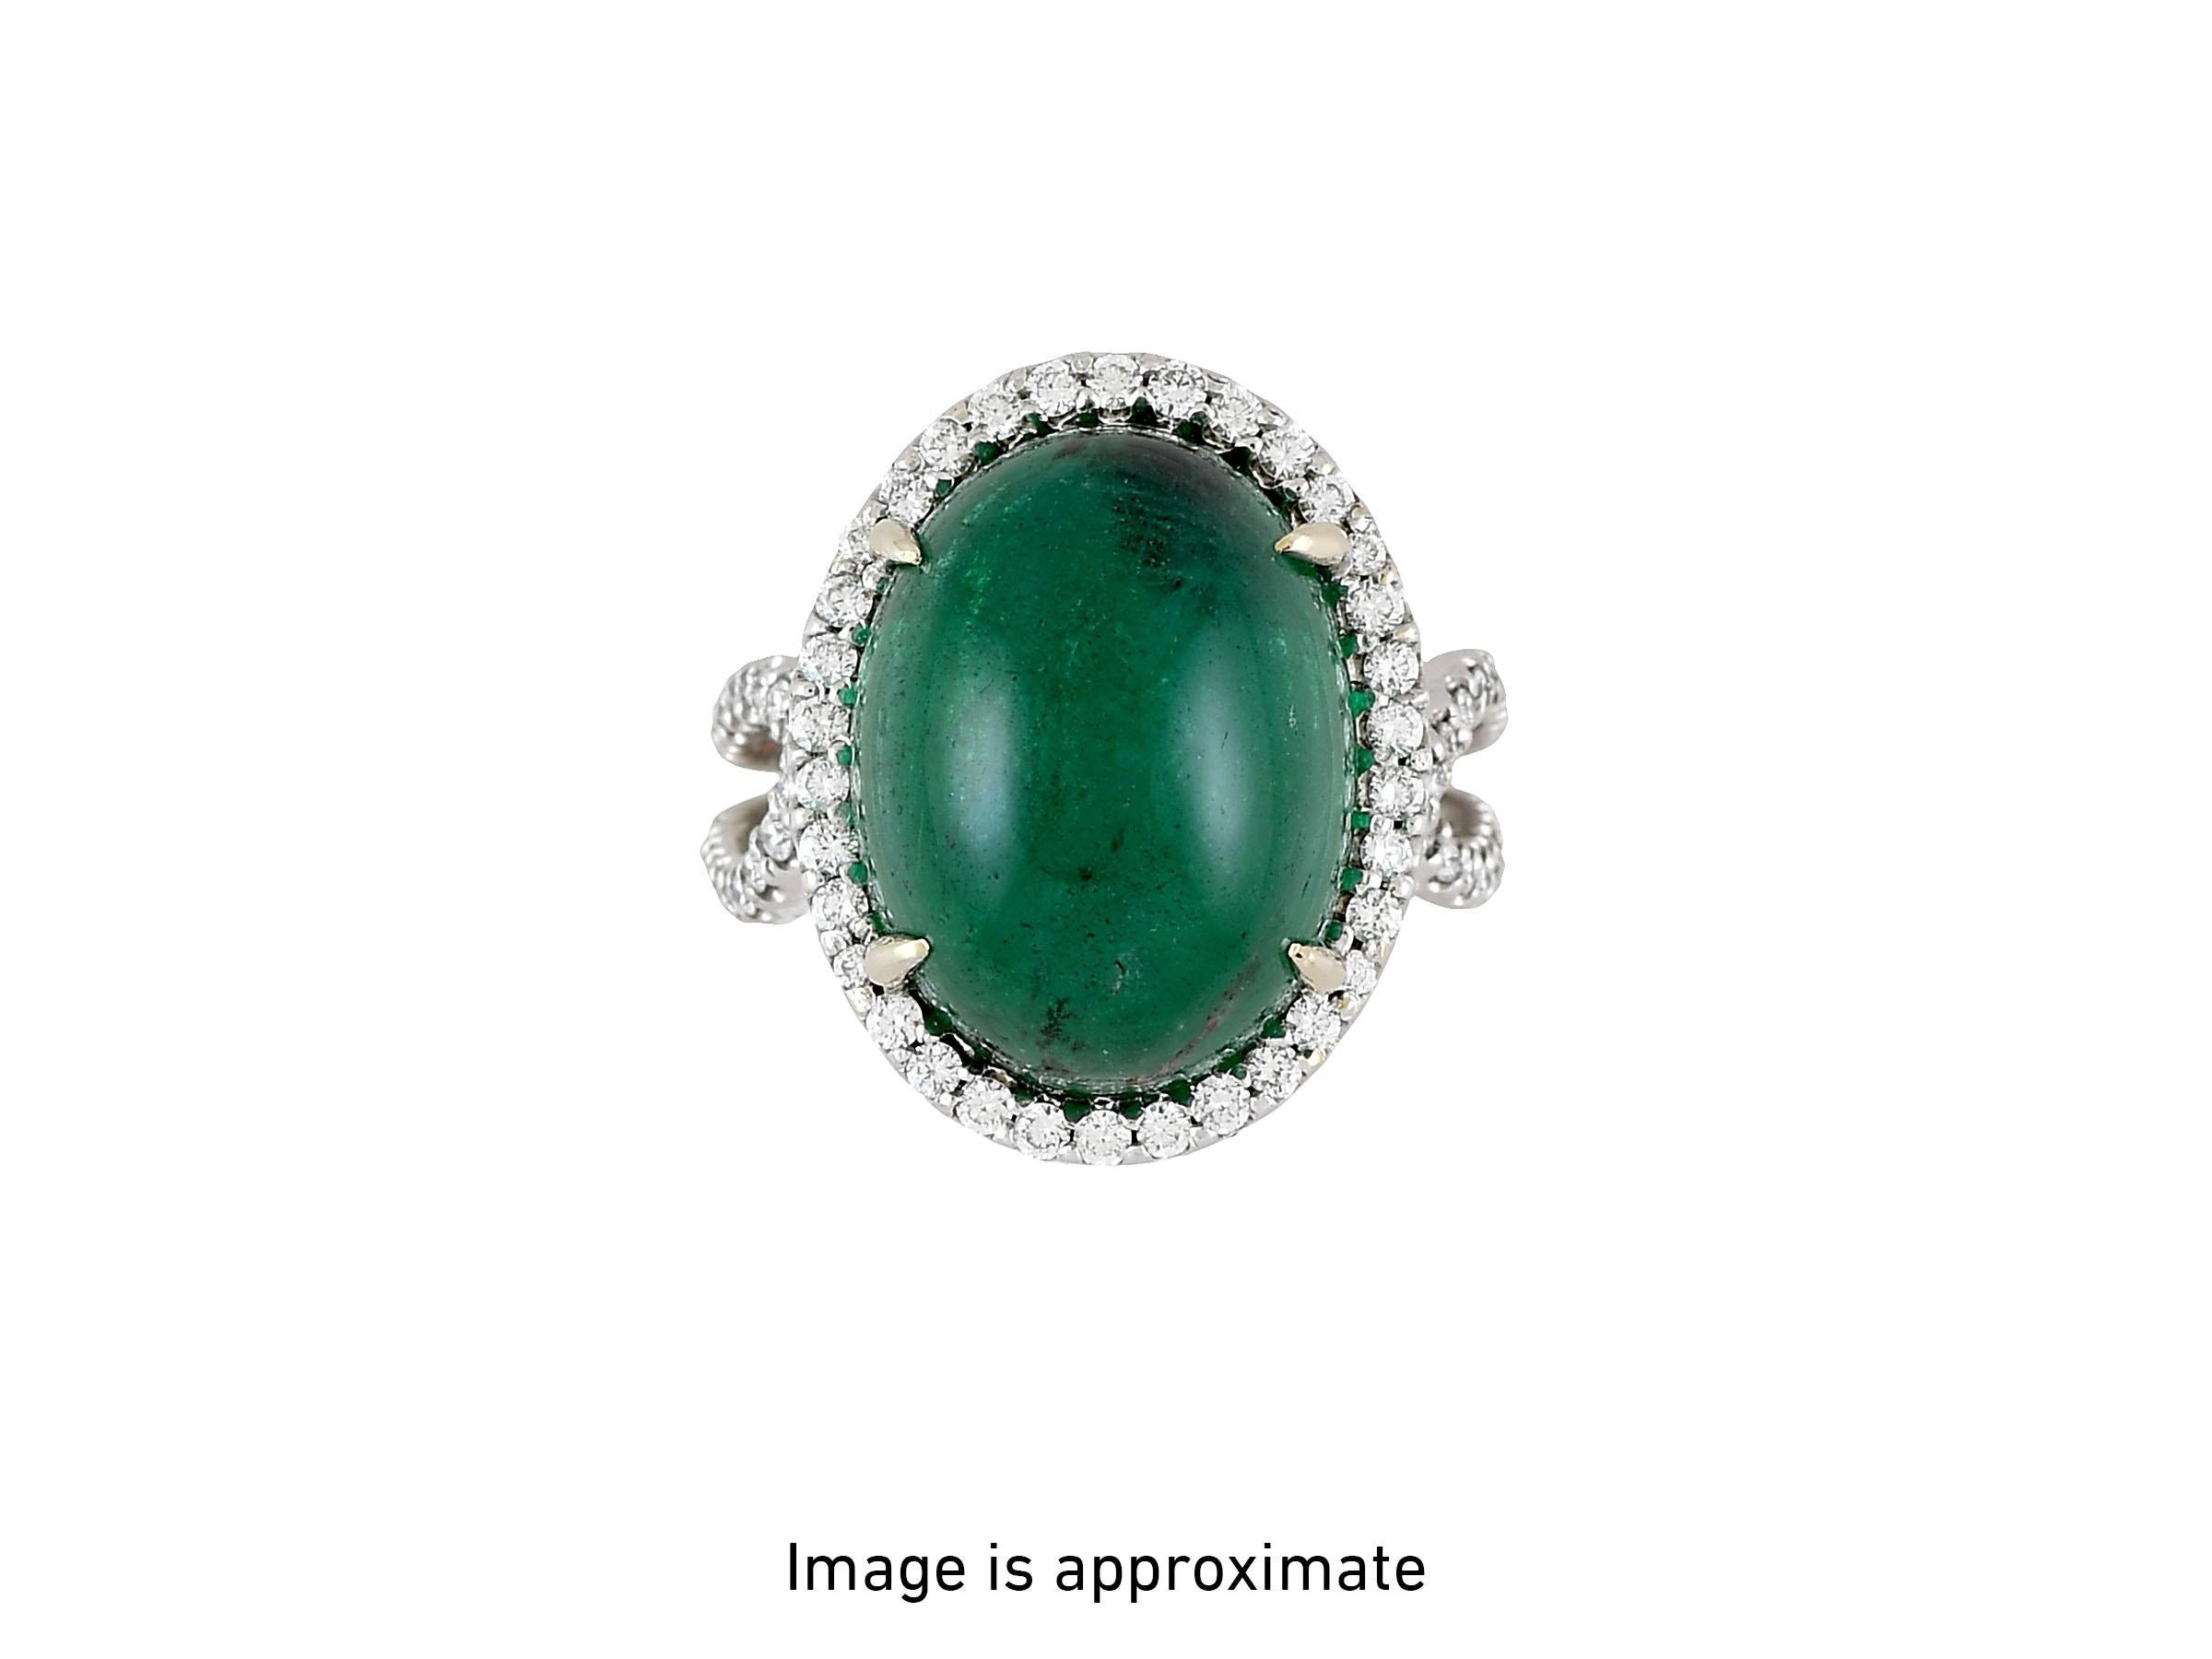 Ein faszinierender sambischer Smaragd von 16,70 Karat im Cabochon wird von zahlreichen Diamanten von insgesamt 0,90 Karat akzentuiert. Wunderschön gearbeitet in 18K Weißgold. GIA-zertifiziert. 